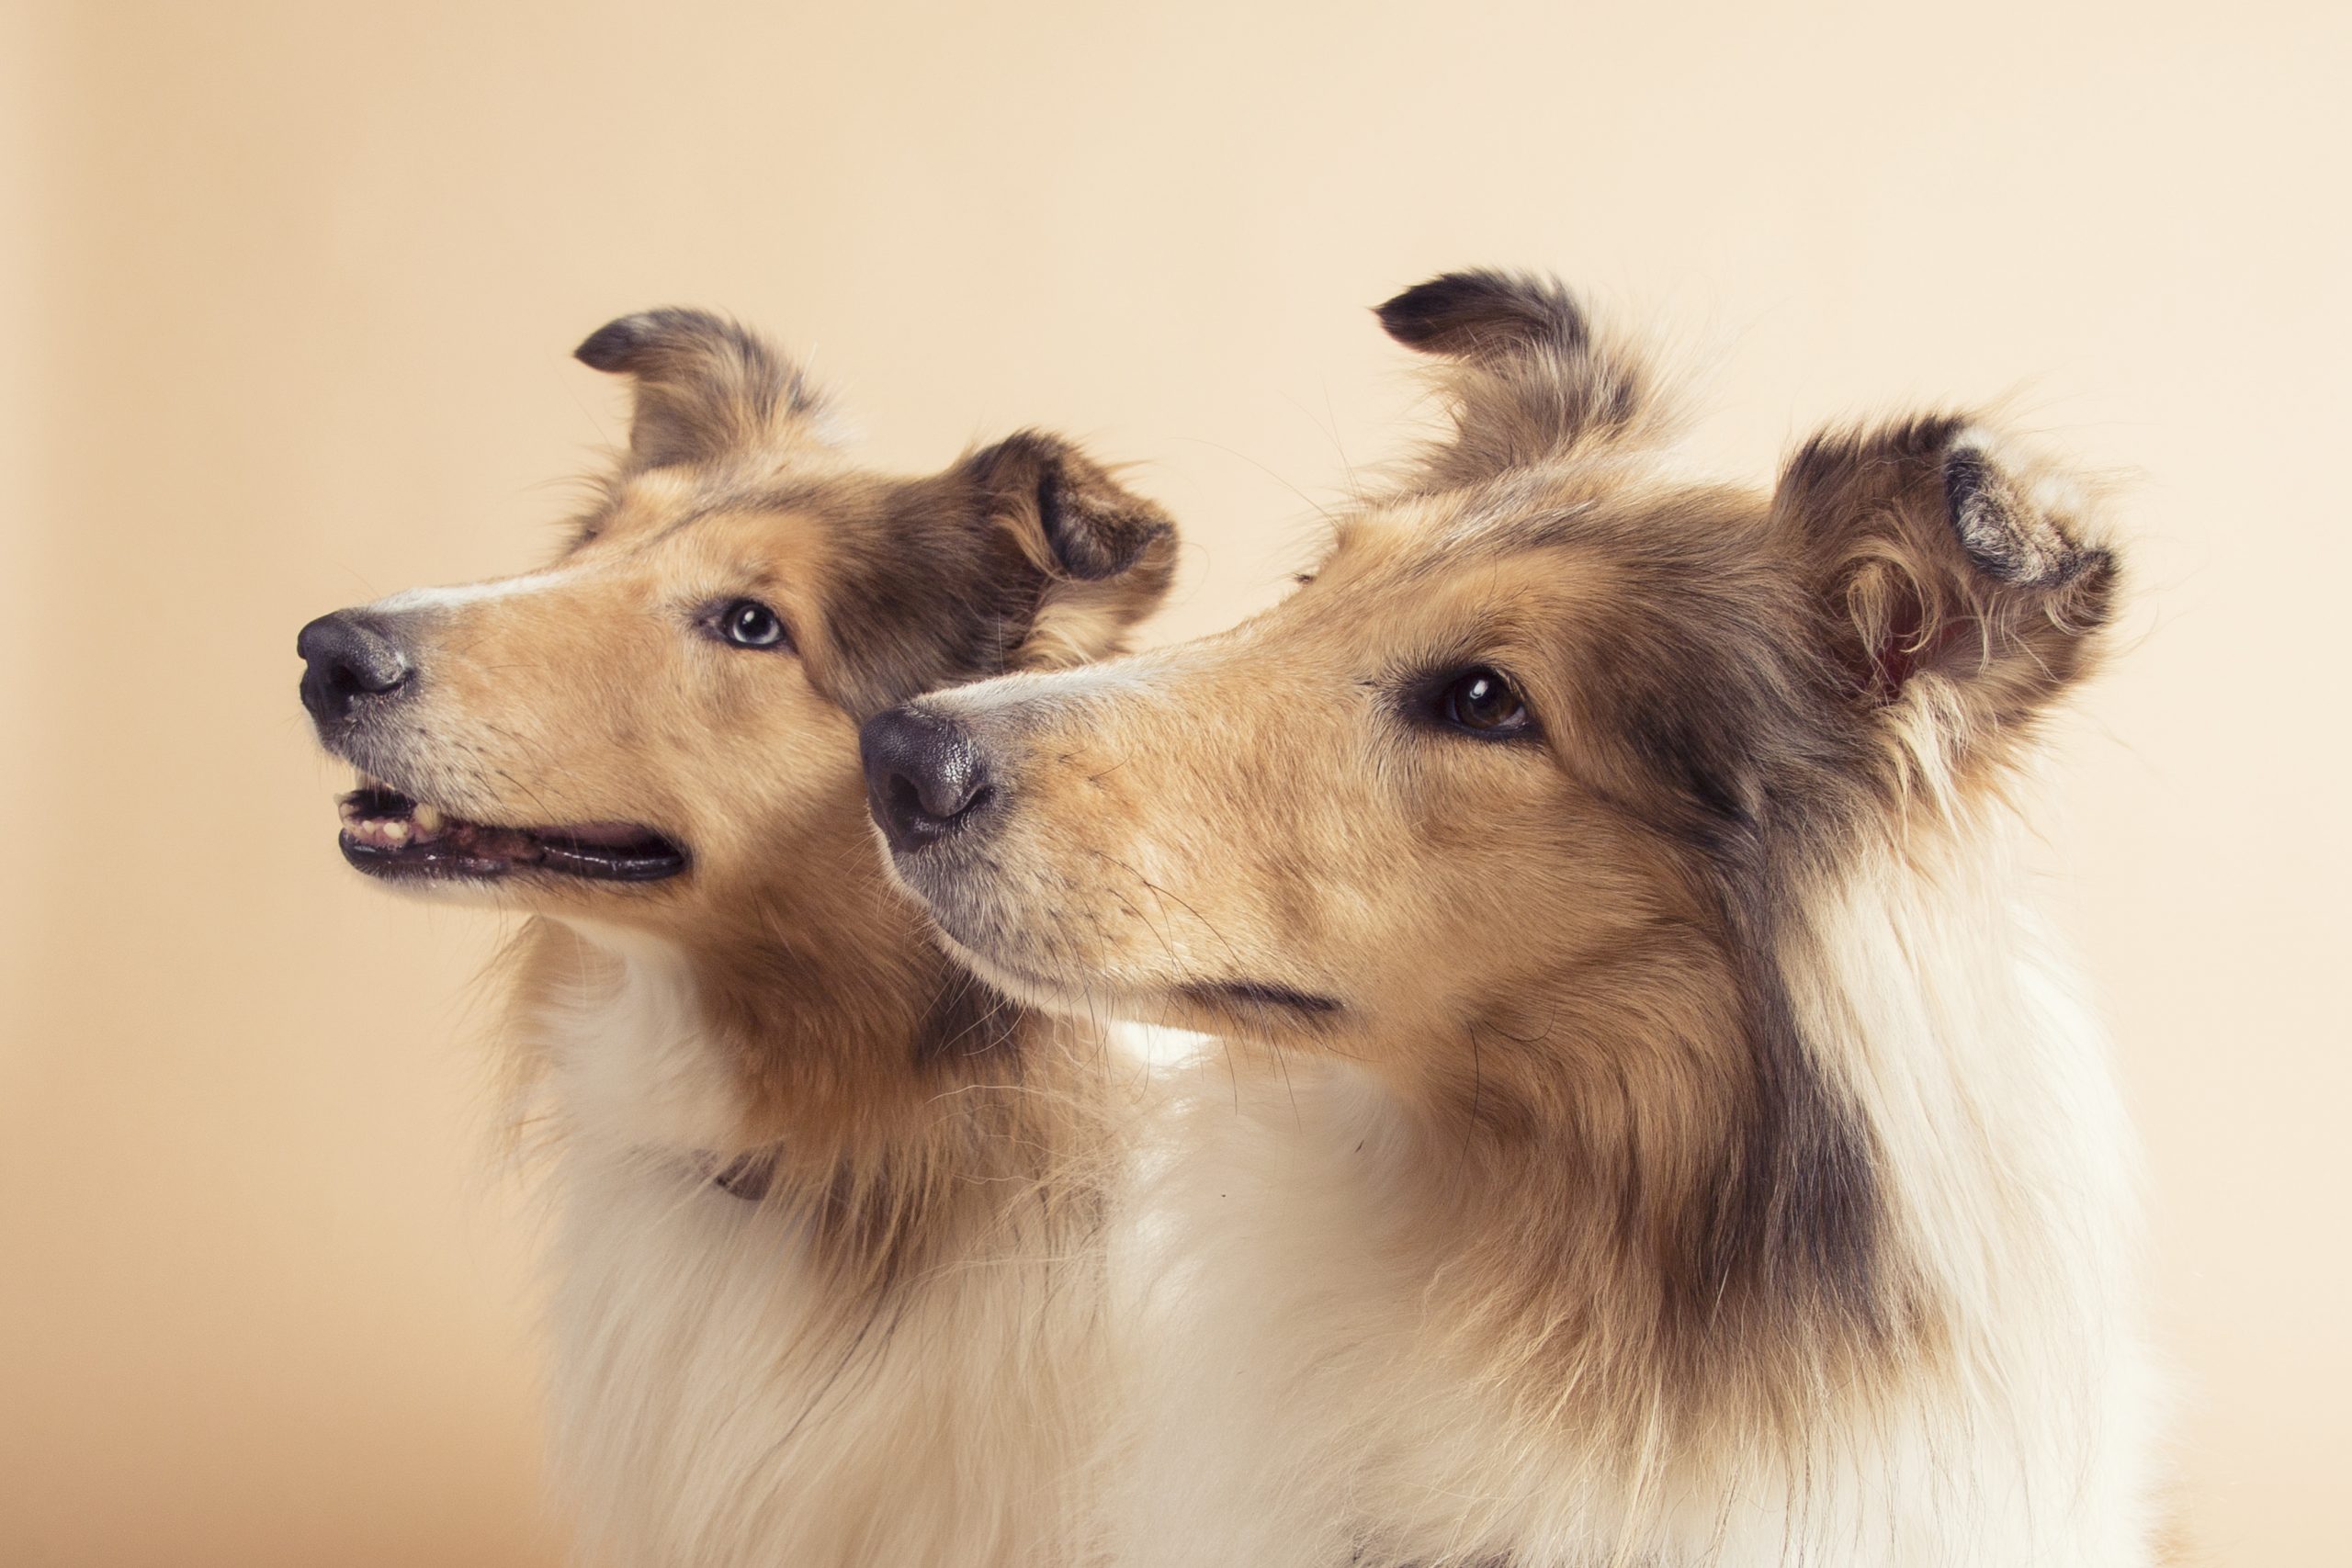 Fotografía de dos perros raza collie mirando hacia la izquierda